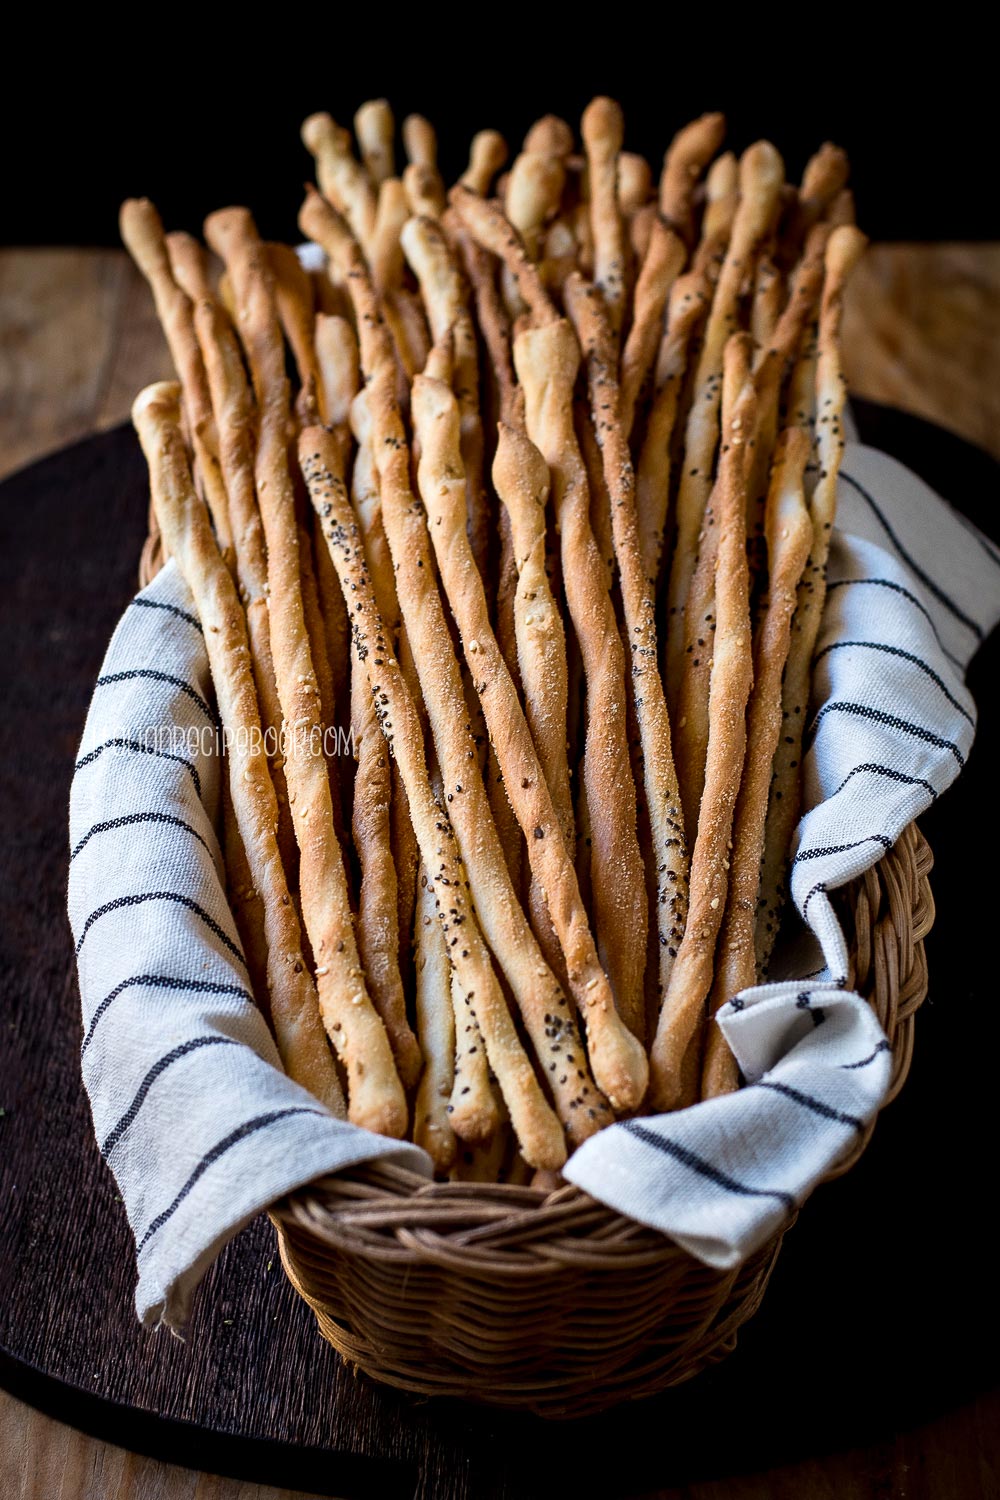 italian breadsticks in a basket